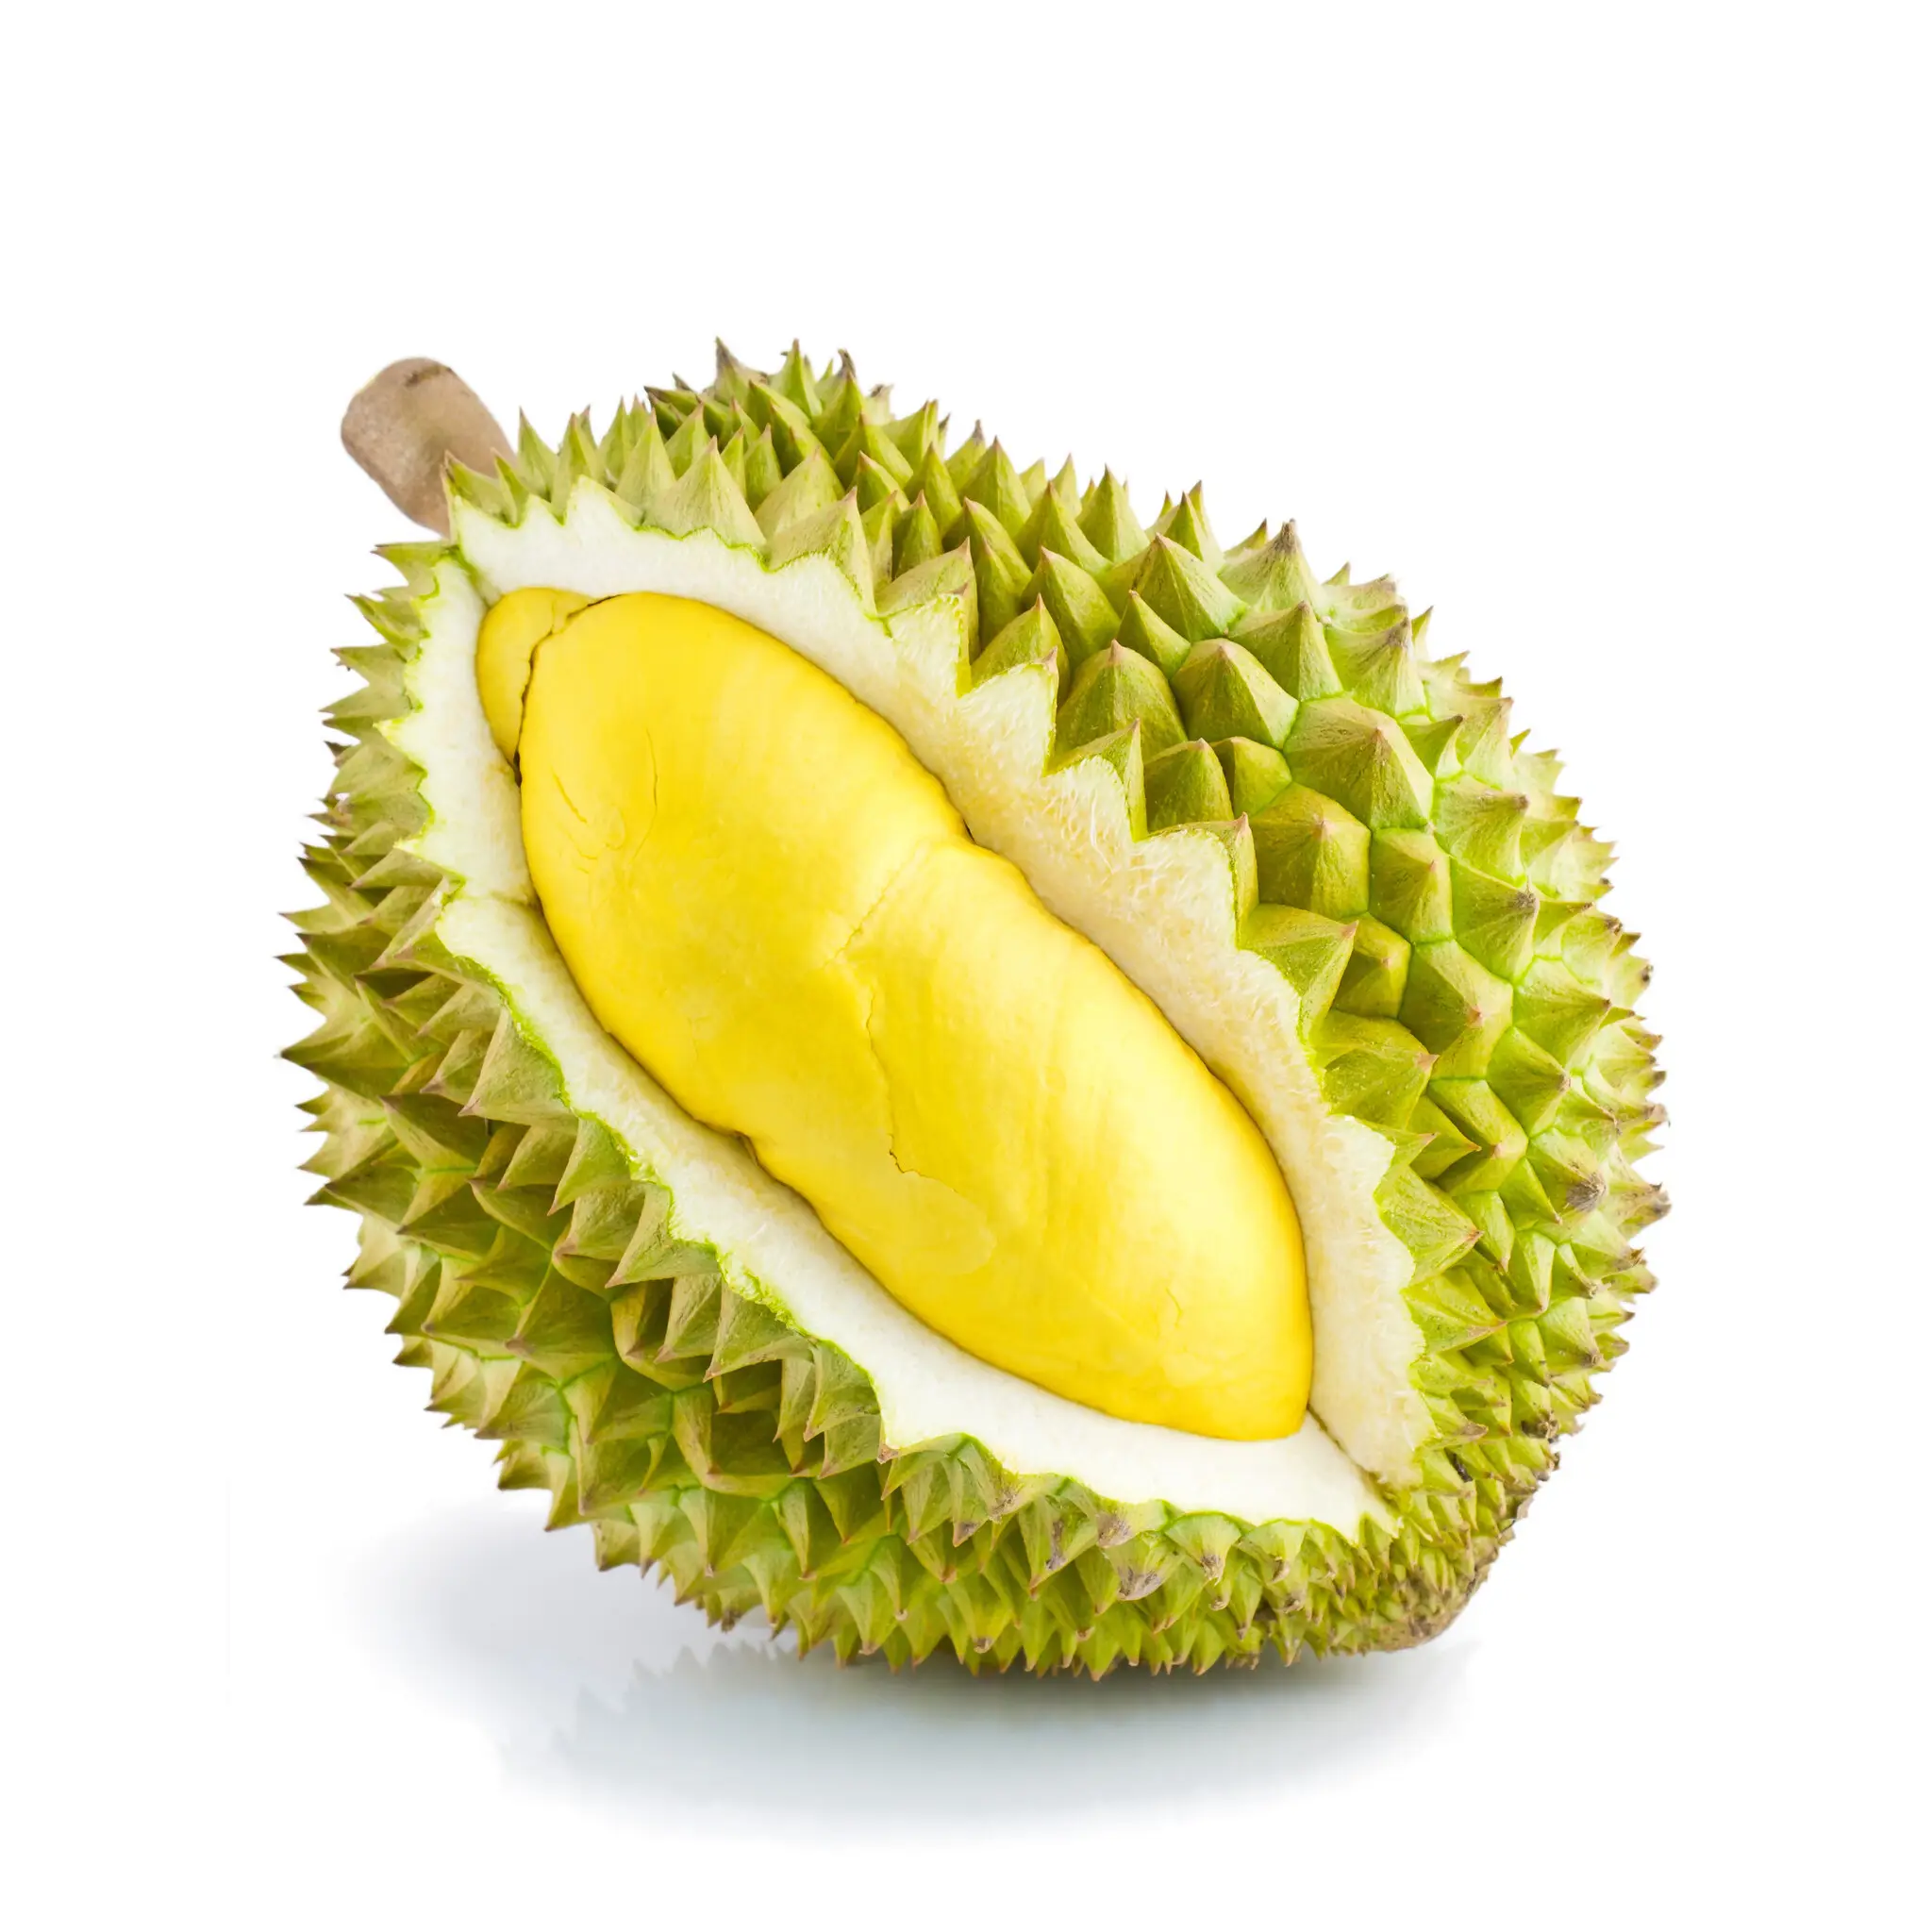 Embalaje Durian congelado 20Kg/caja para exportación. Whatsapp + 84 976727907 Sra. Carolina